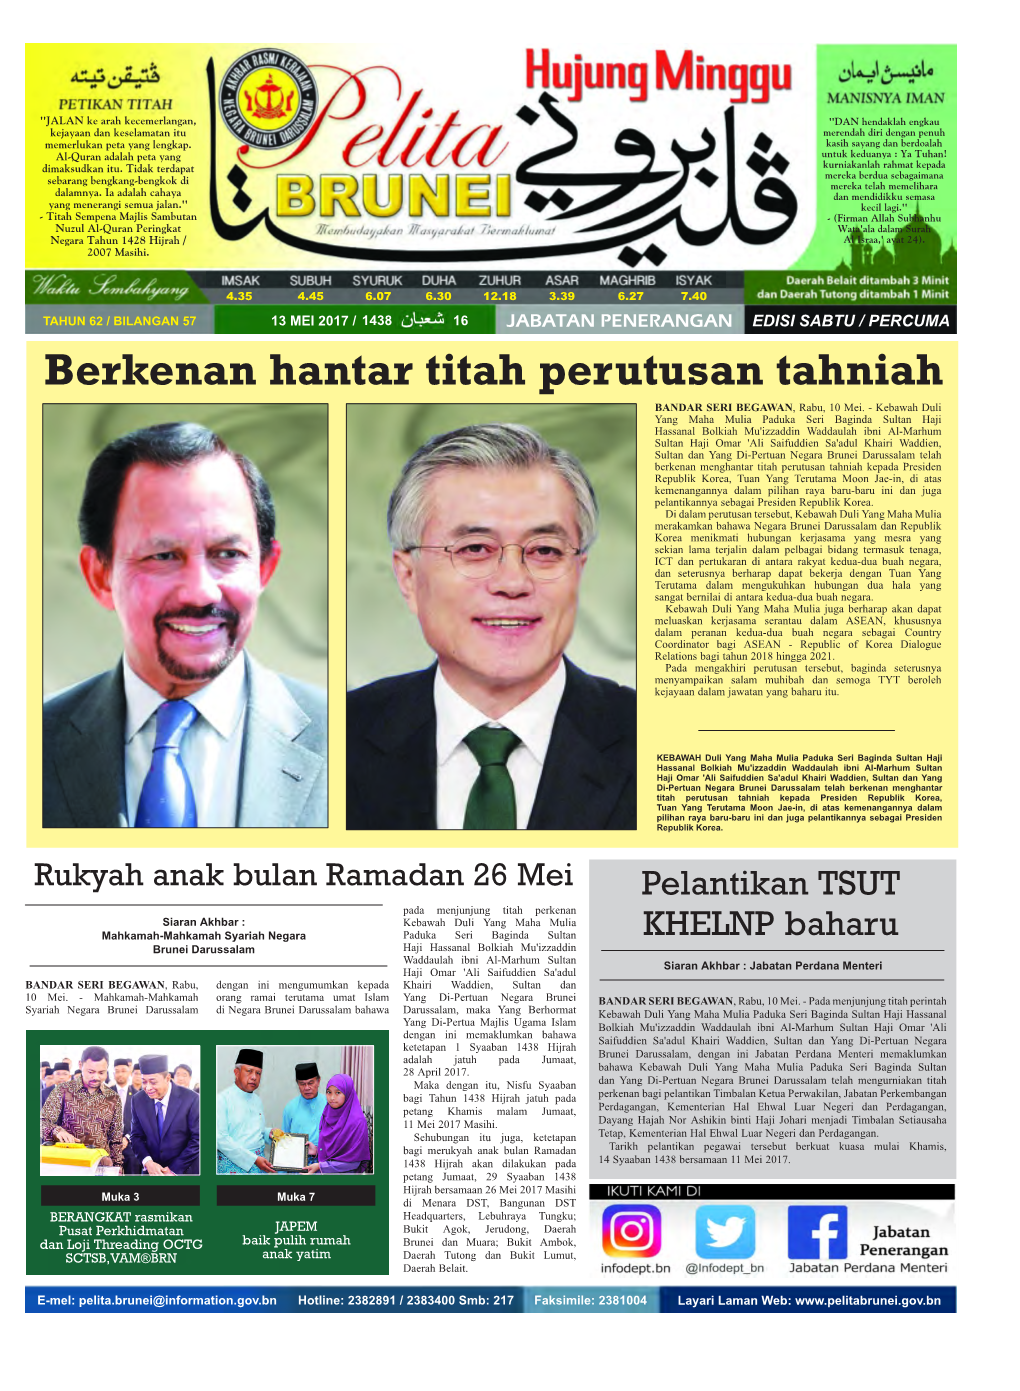 Pelita Brunei 13 Mei 2015